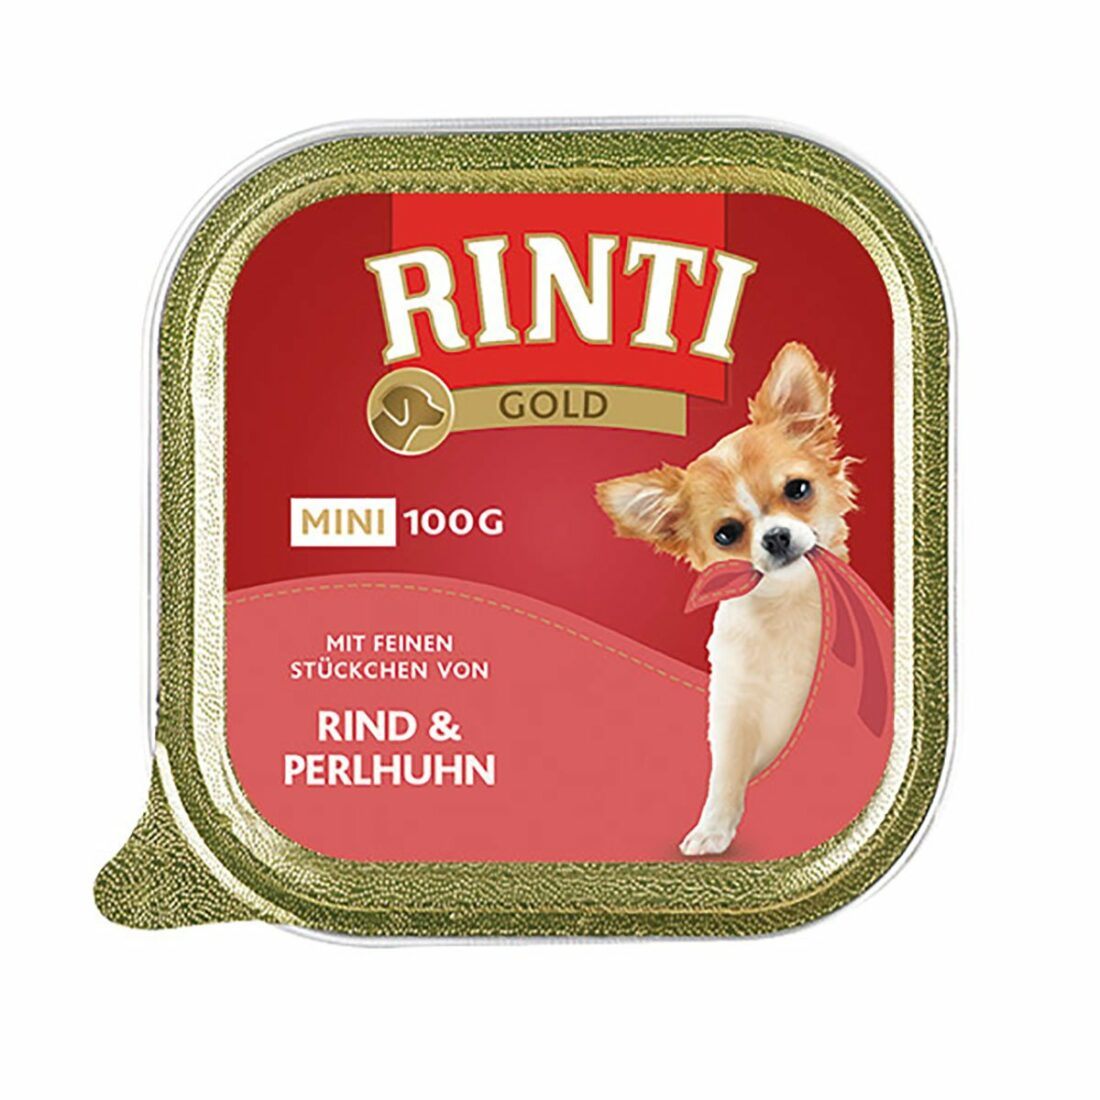 Rinti Gold Mini s jemnými kousky hovězího masa